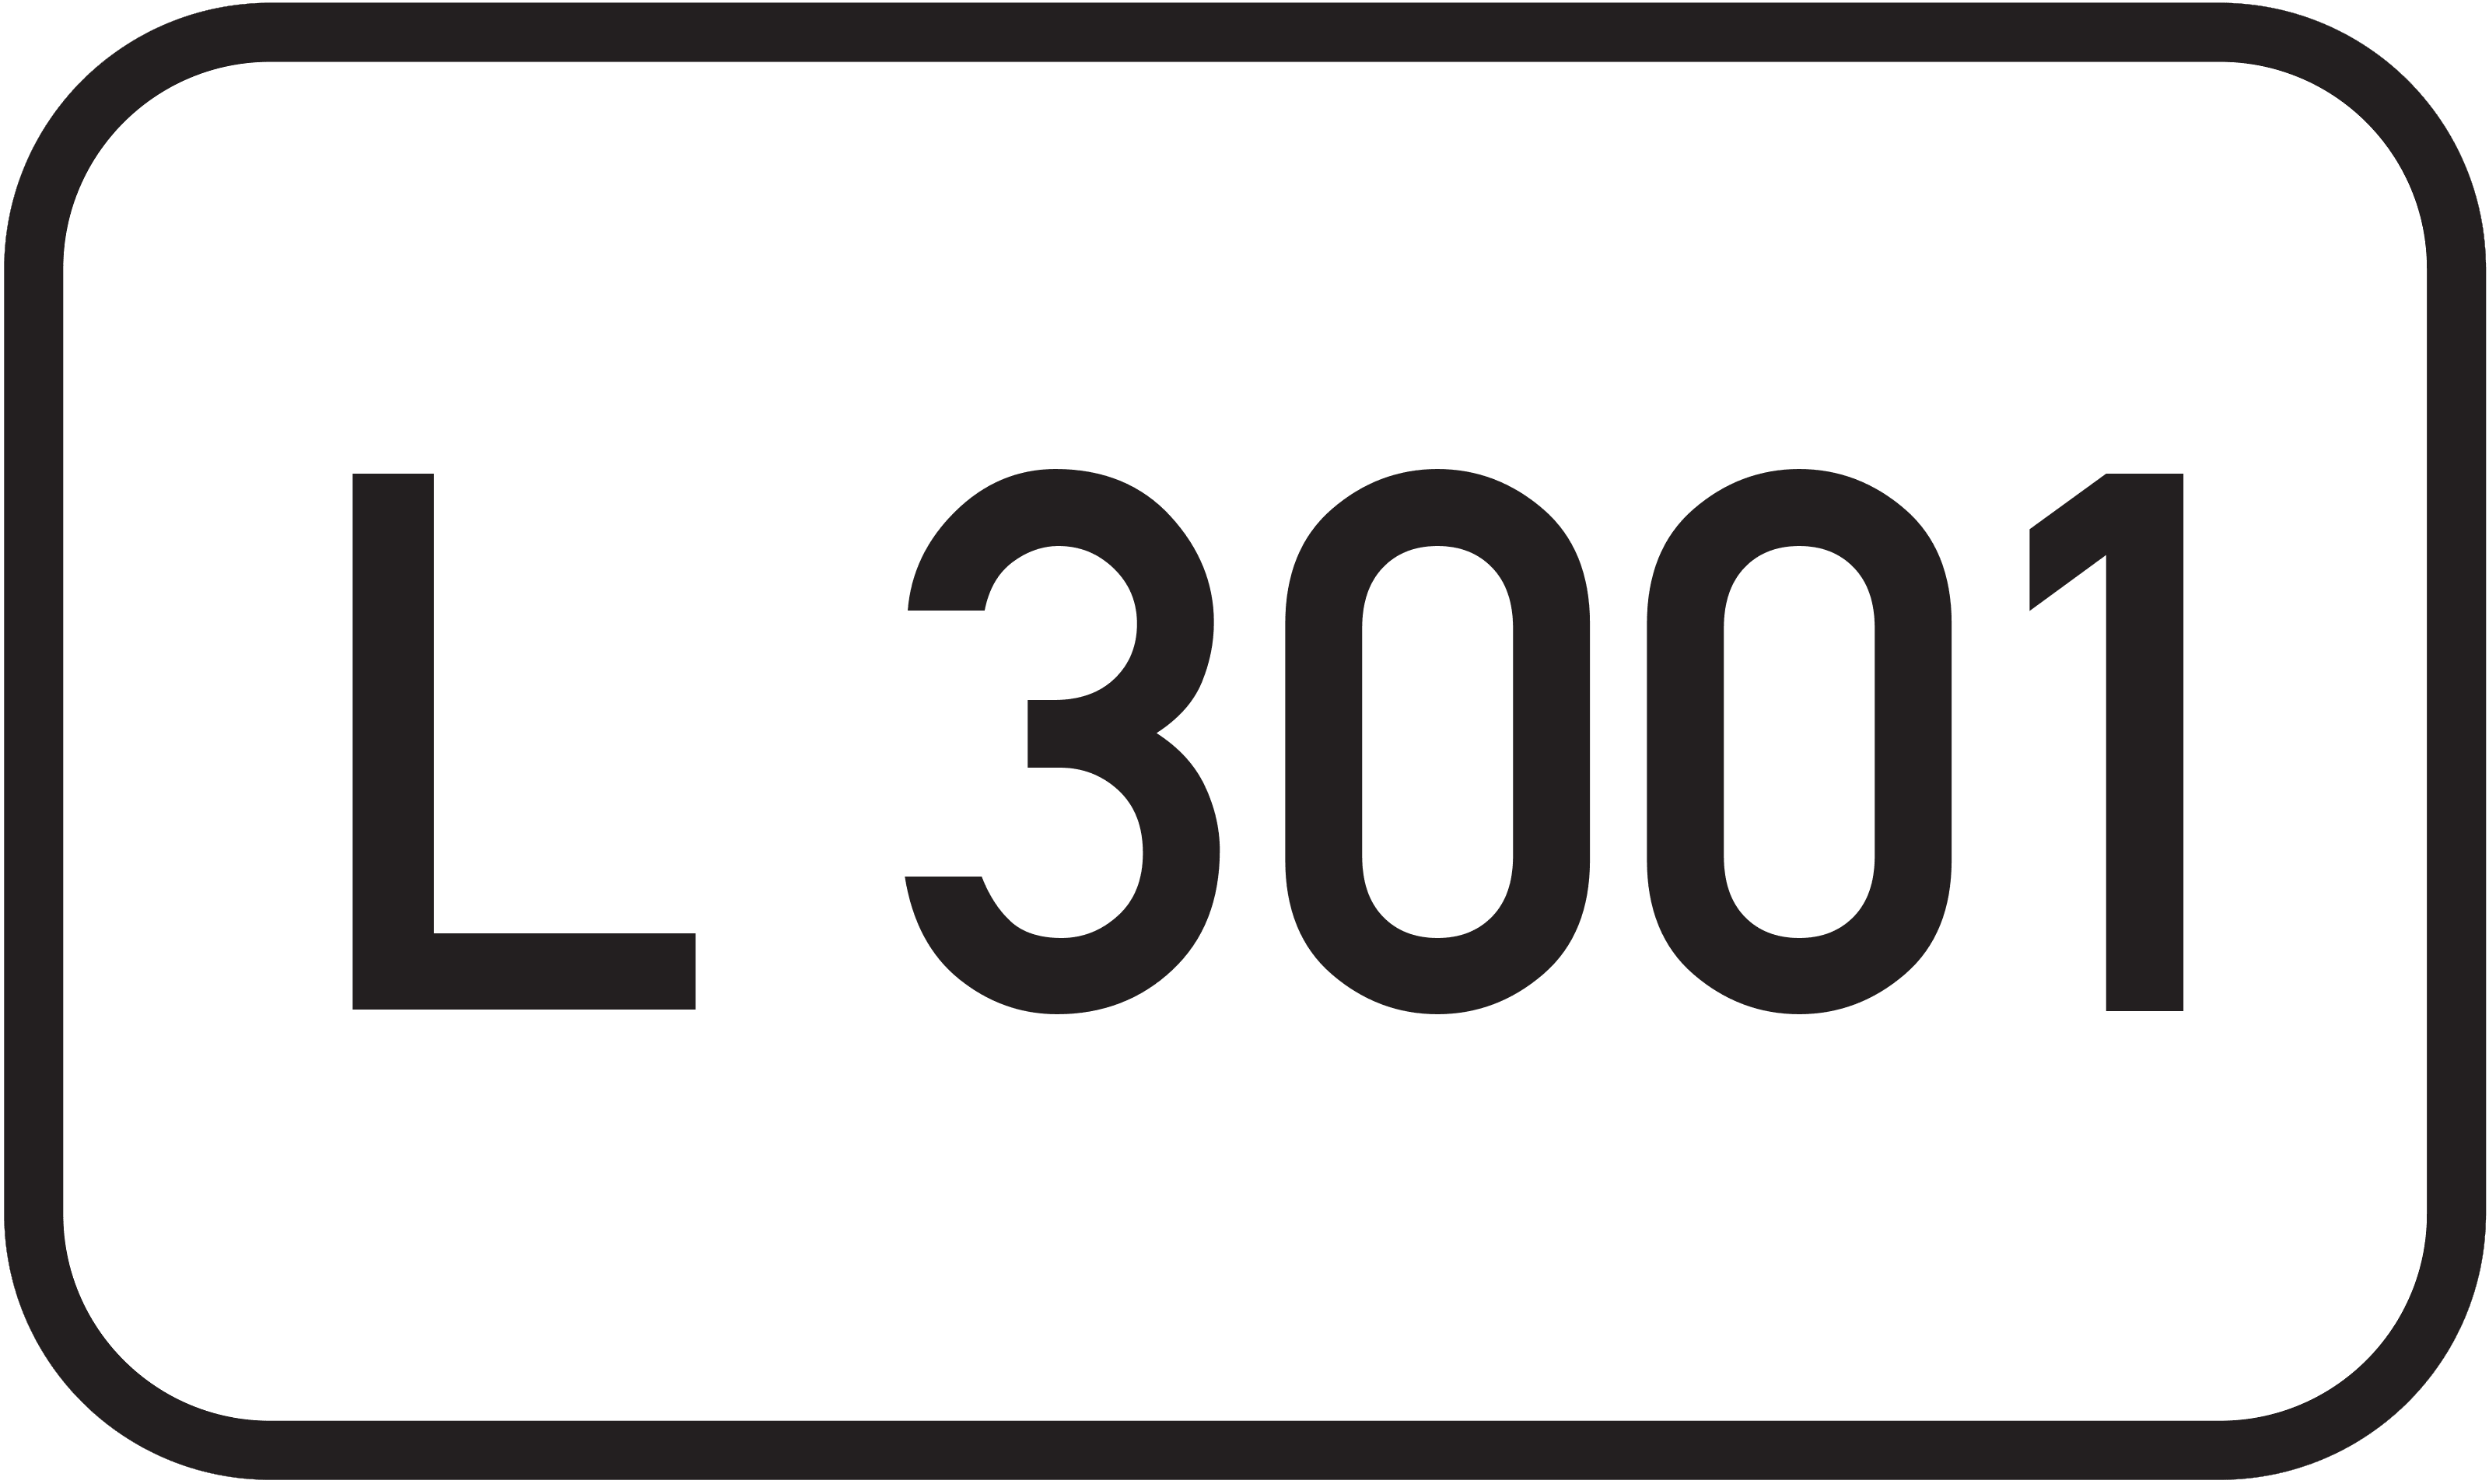 Landesstraße L 3001